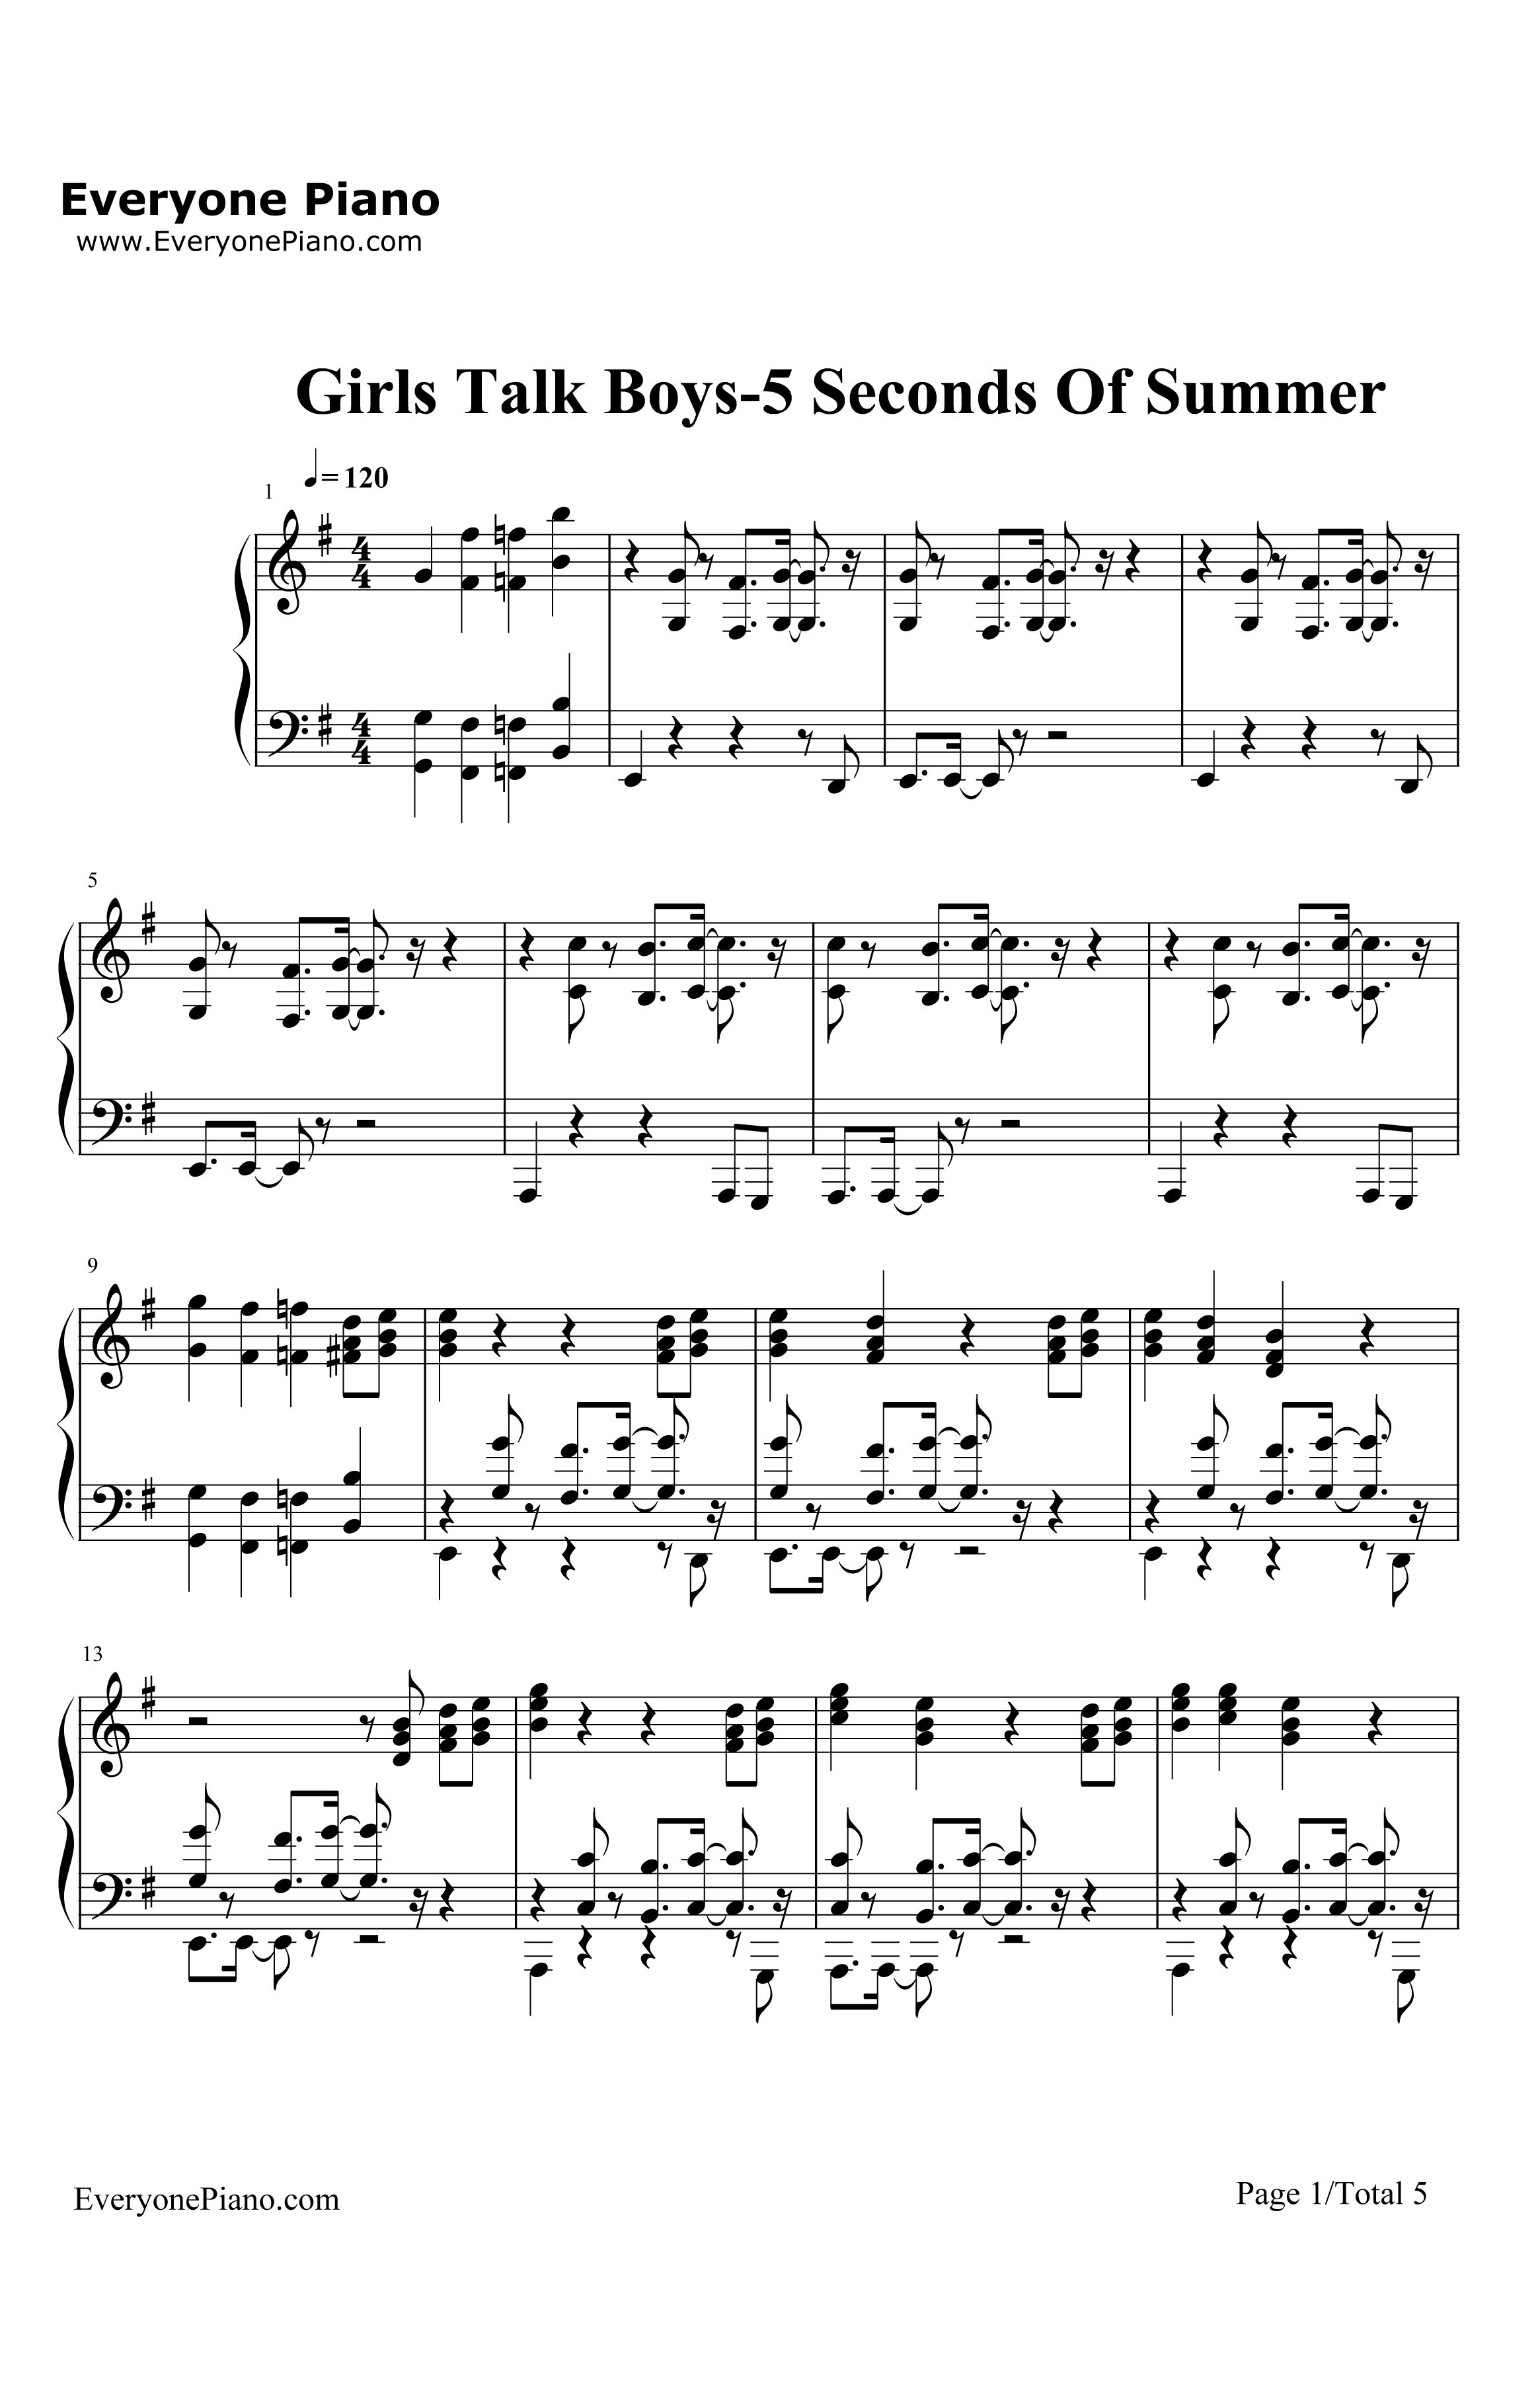 GirlsTalkBoys钢琴谱-5SecondsOfSummer1